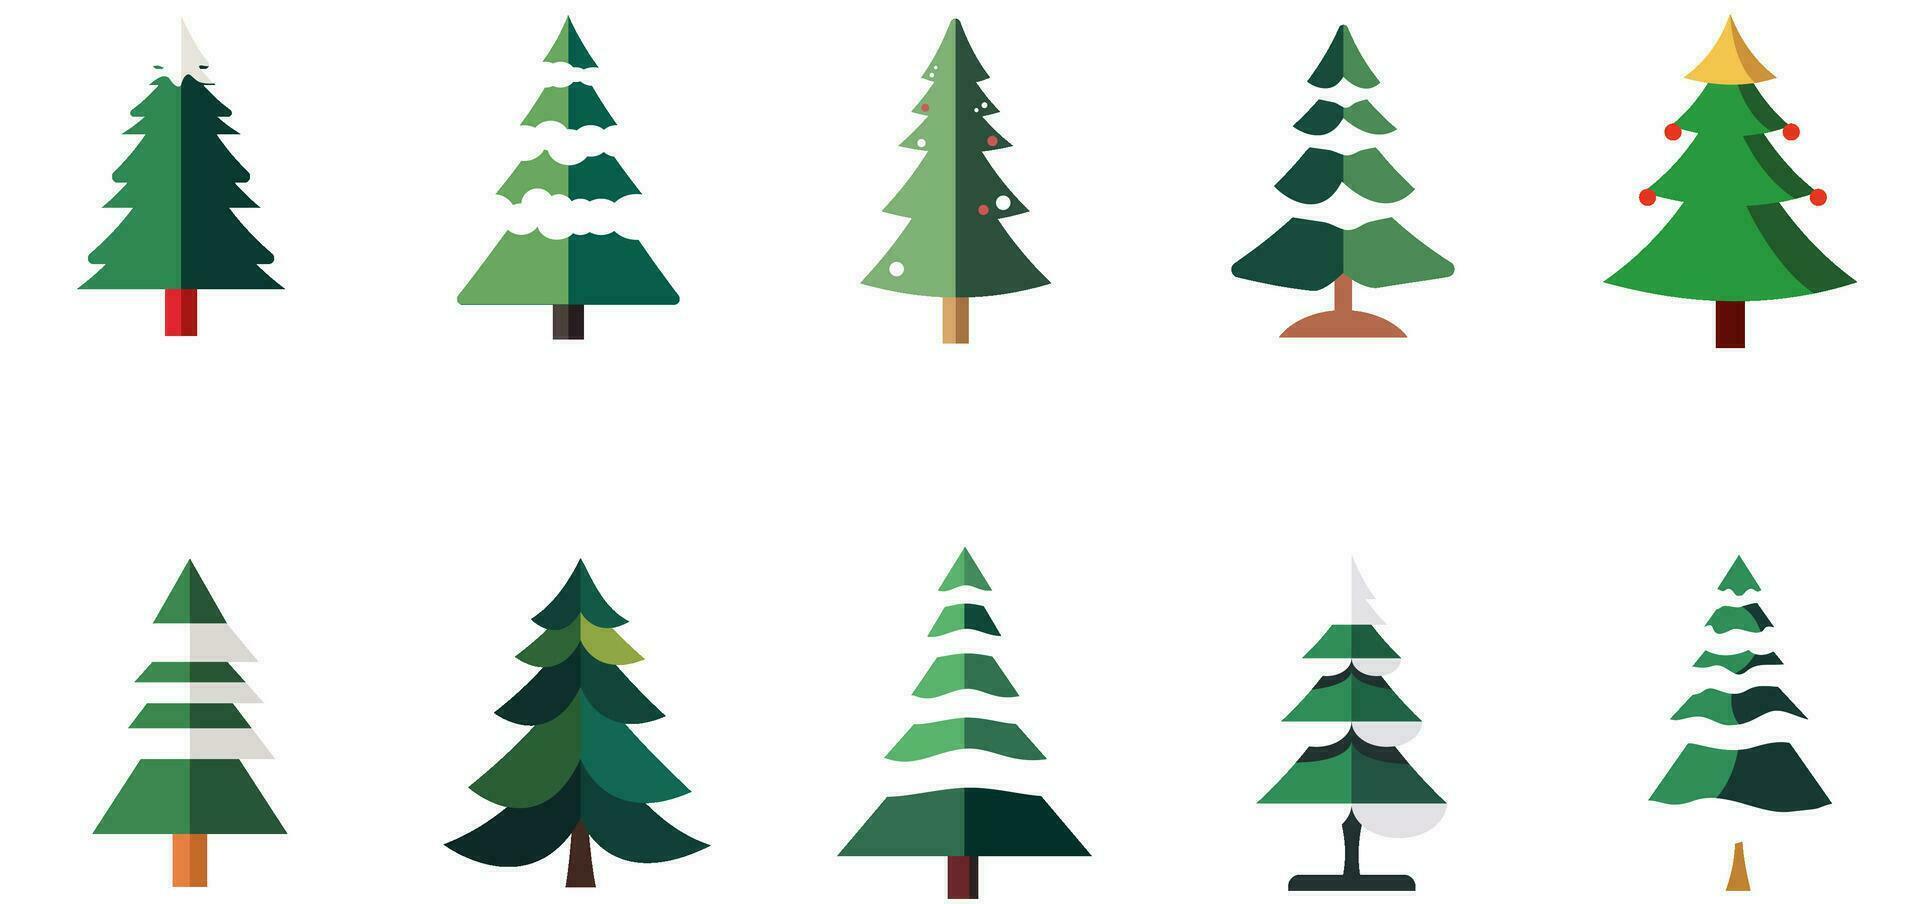 Navidad árbol conjunto de decoraciones elemento para Navidad fiesta bandera, póster vector